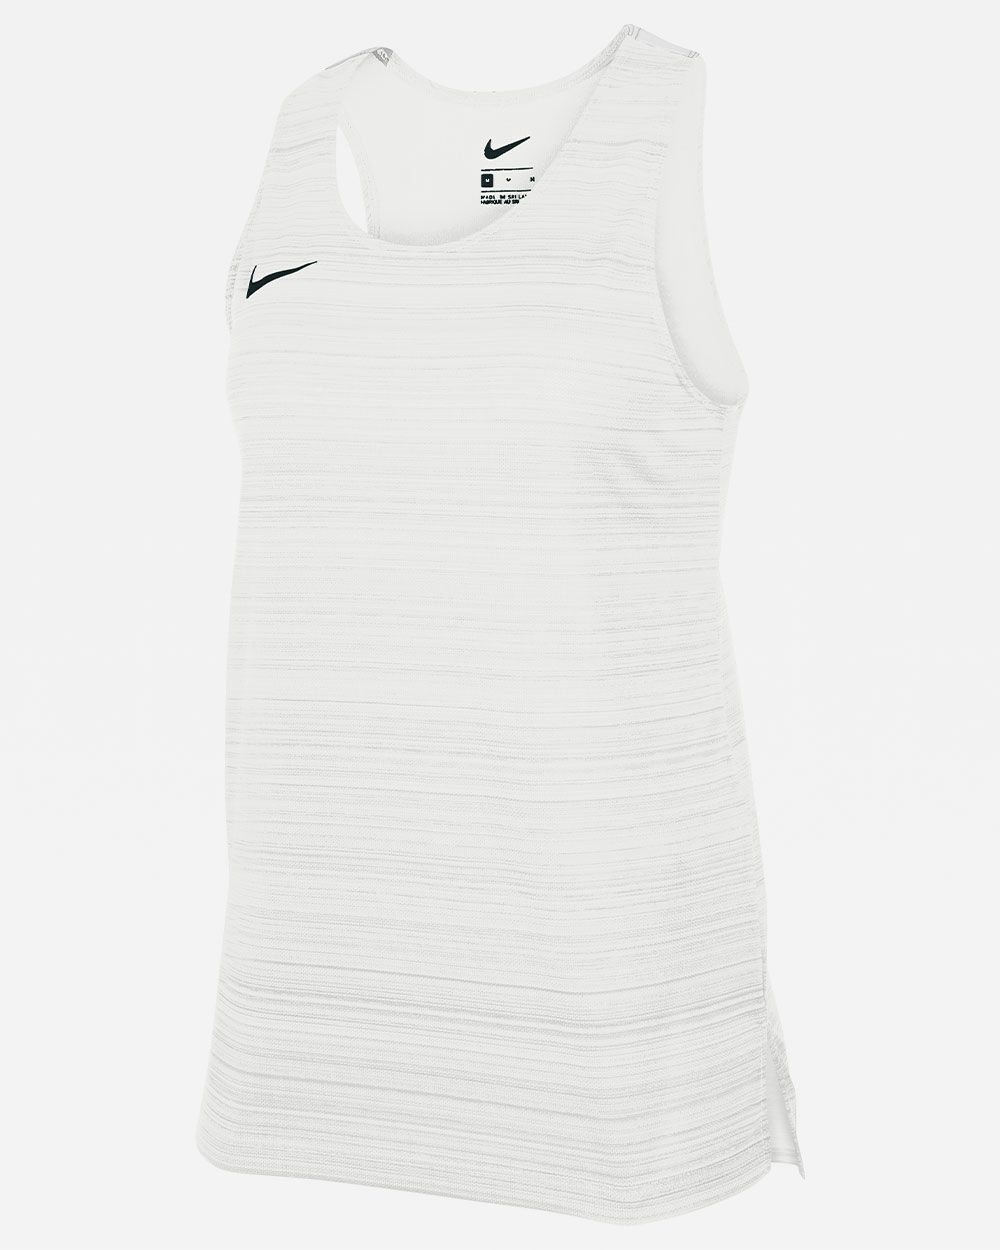 Camiseta sin mangas de running Nike Stock Blanco Mujeres - NT0301-100